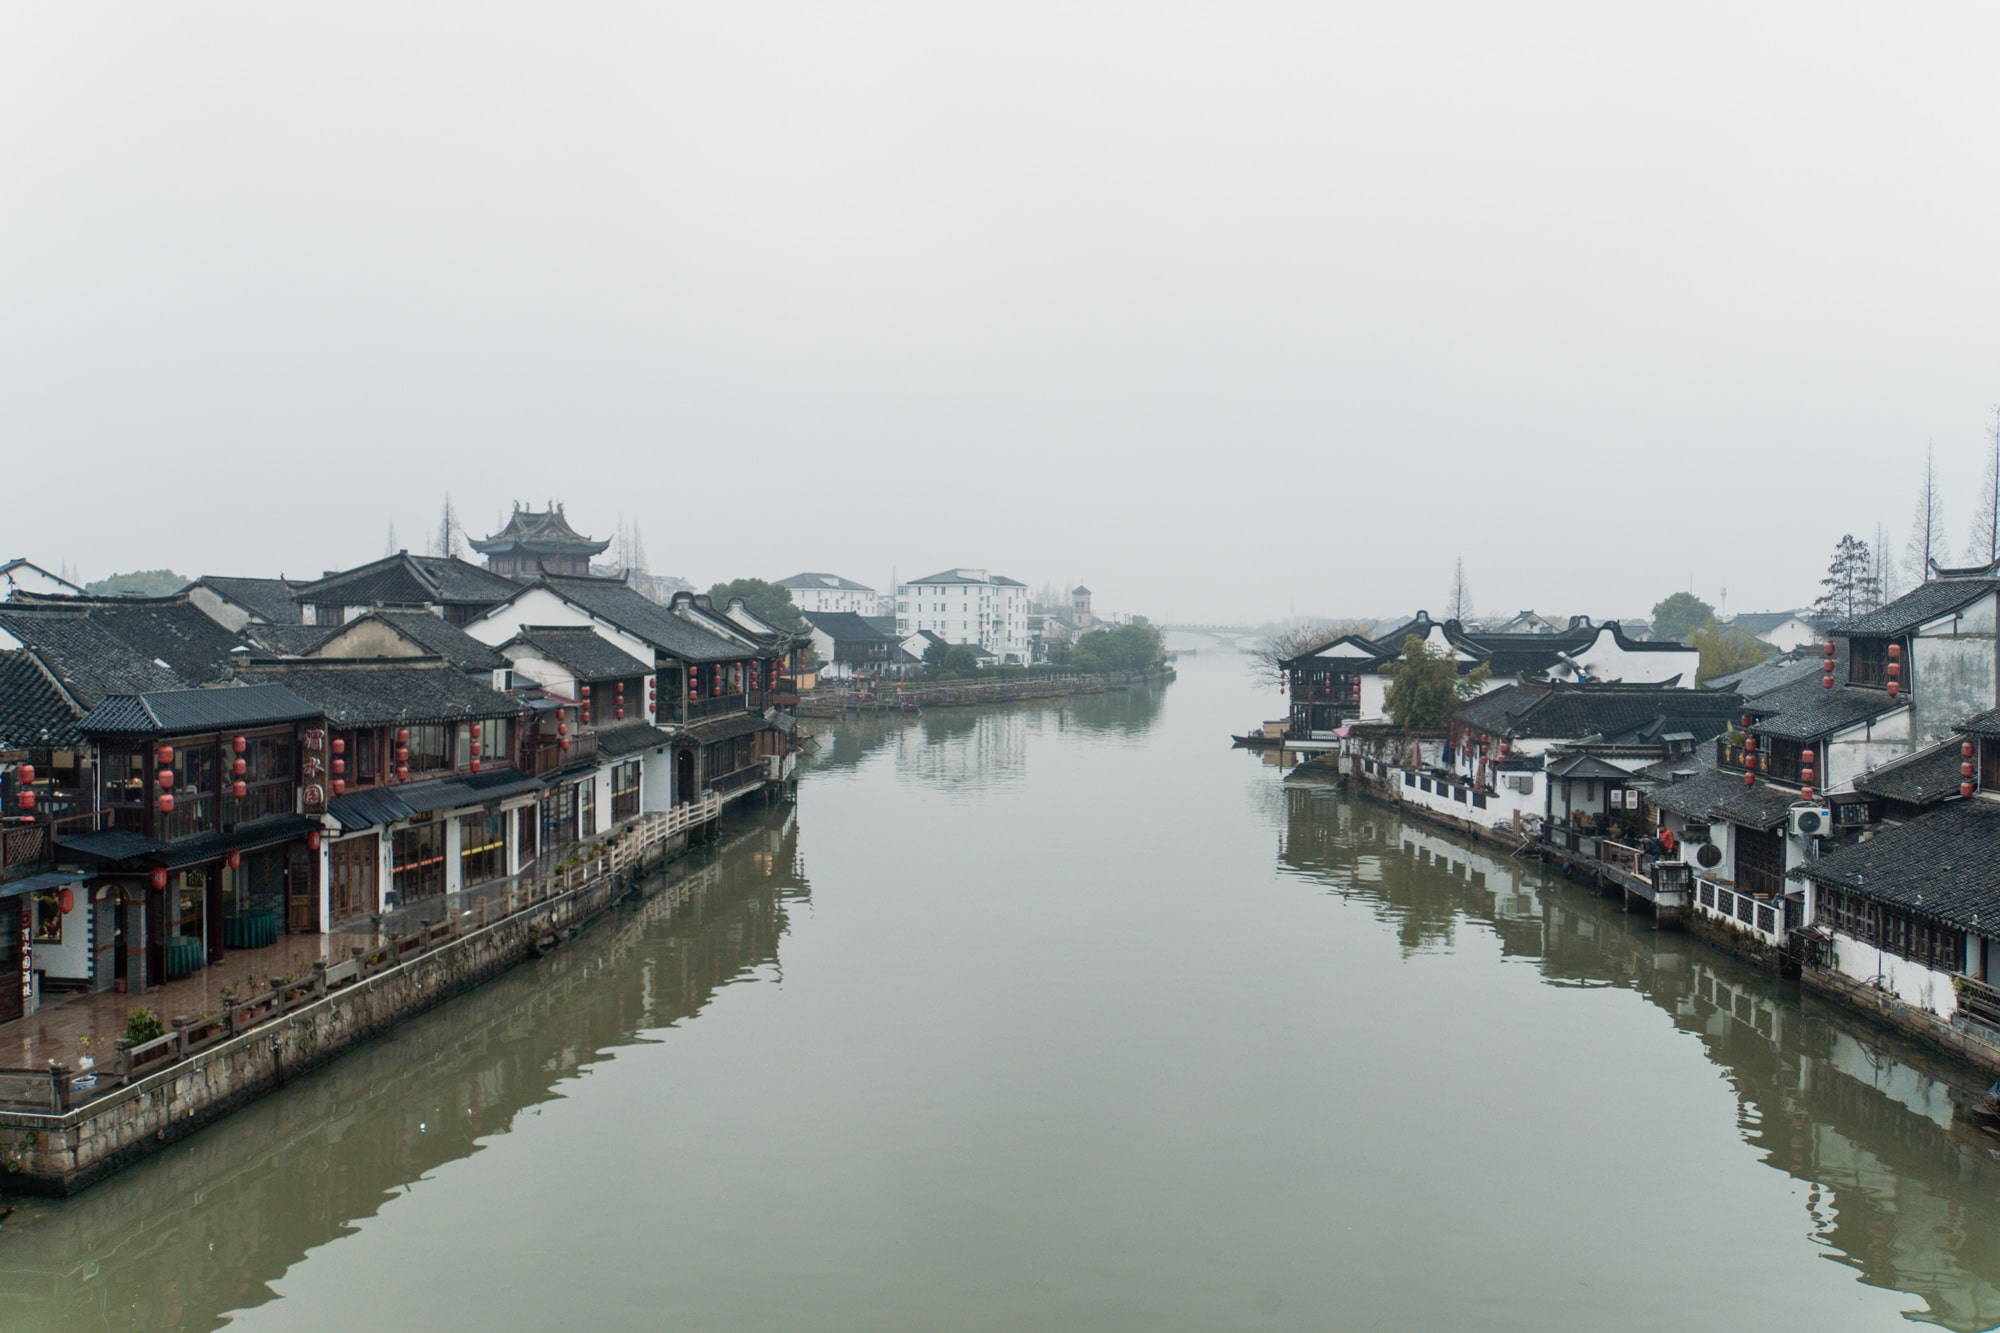 Zhujiajiao Tagesausflug: Tipps für die Wasserstadt bei Shanghai